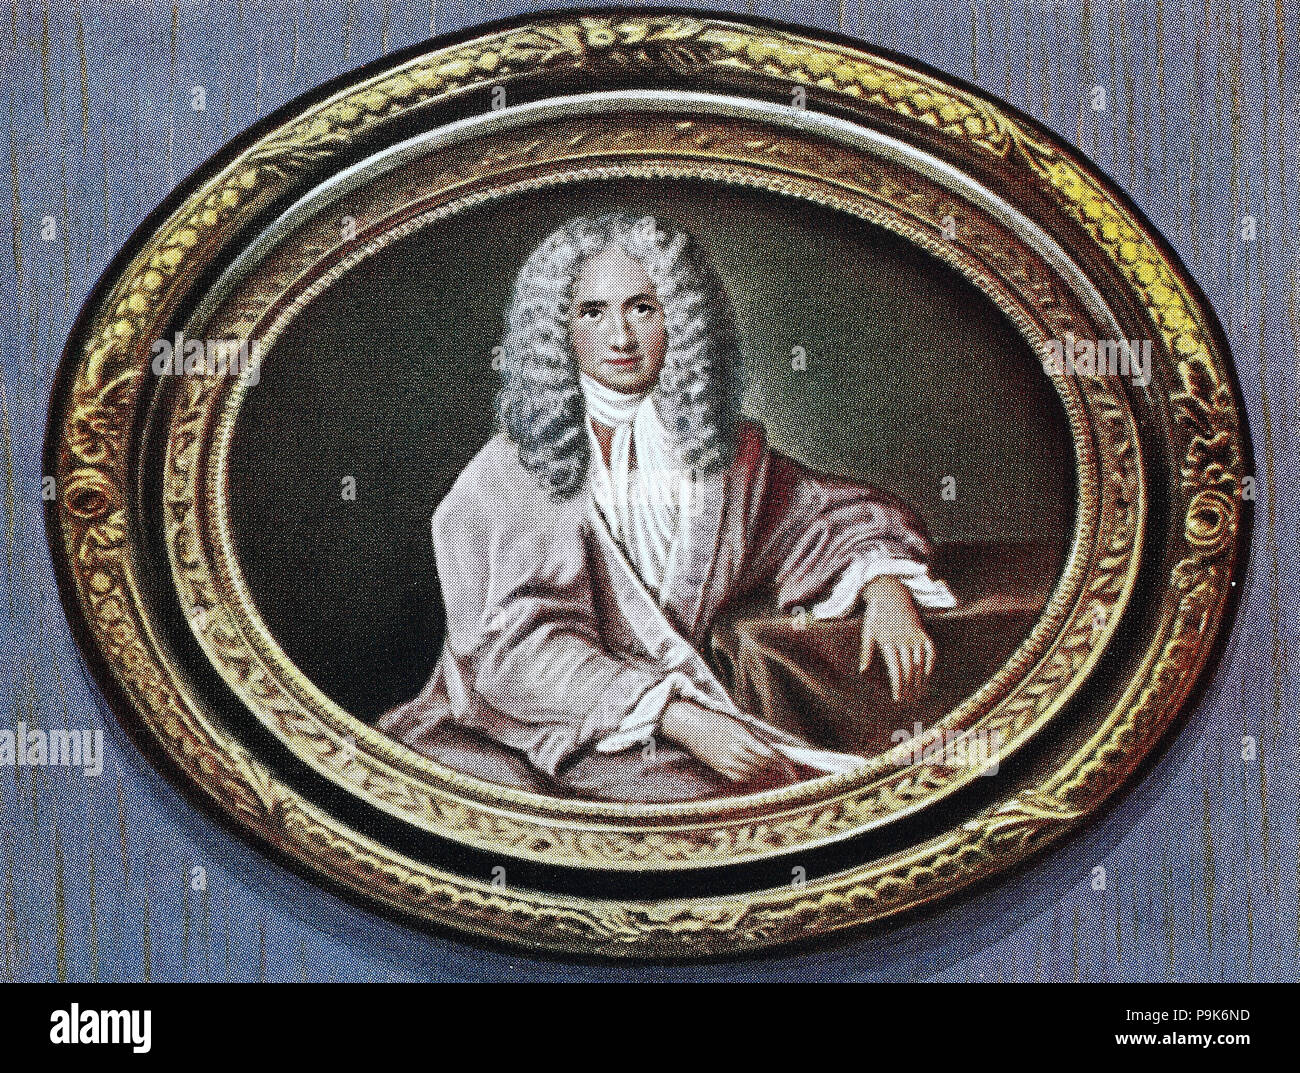 François-Marie Arouet, 21 novembre 1694 - 30 mai 1778, connu par son nom de plume Voltaire, était un écrivain, historien et philosophe français des Lumières célèbre pour son esprit, la reproduction numérique améliorée d'un original imprimé de l'année 1900 Banque D'Images